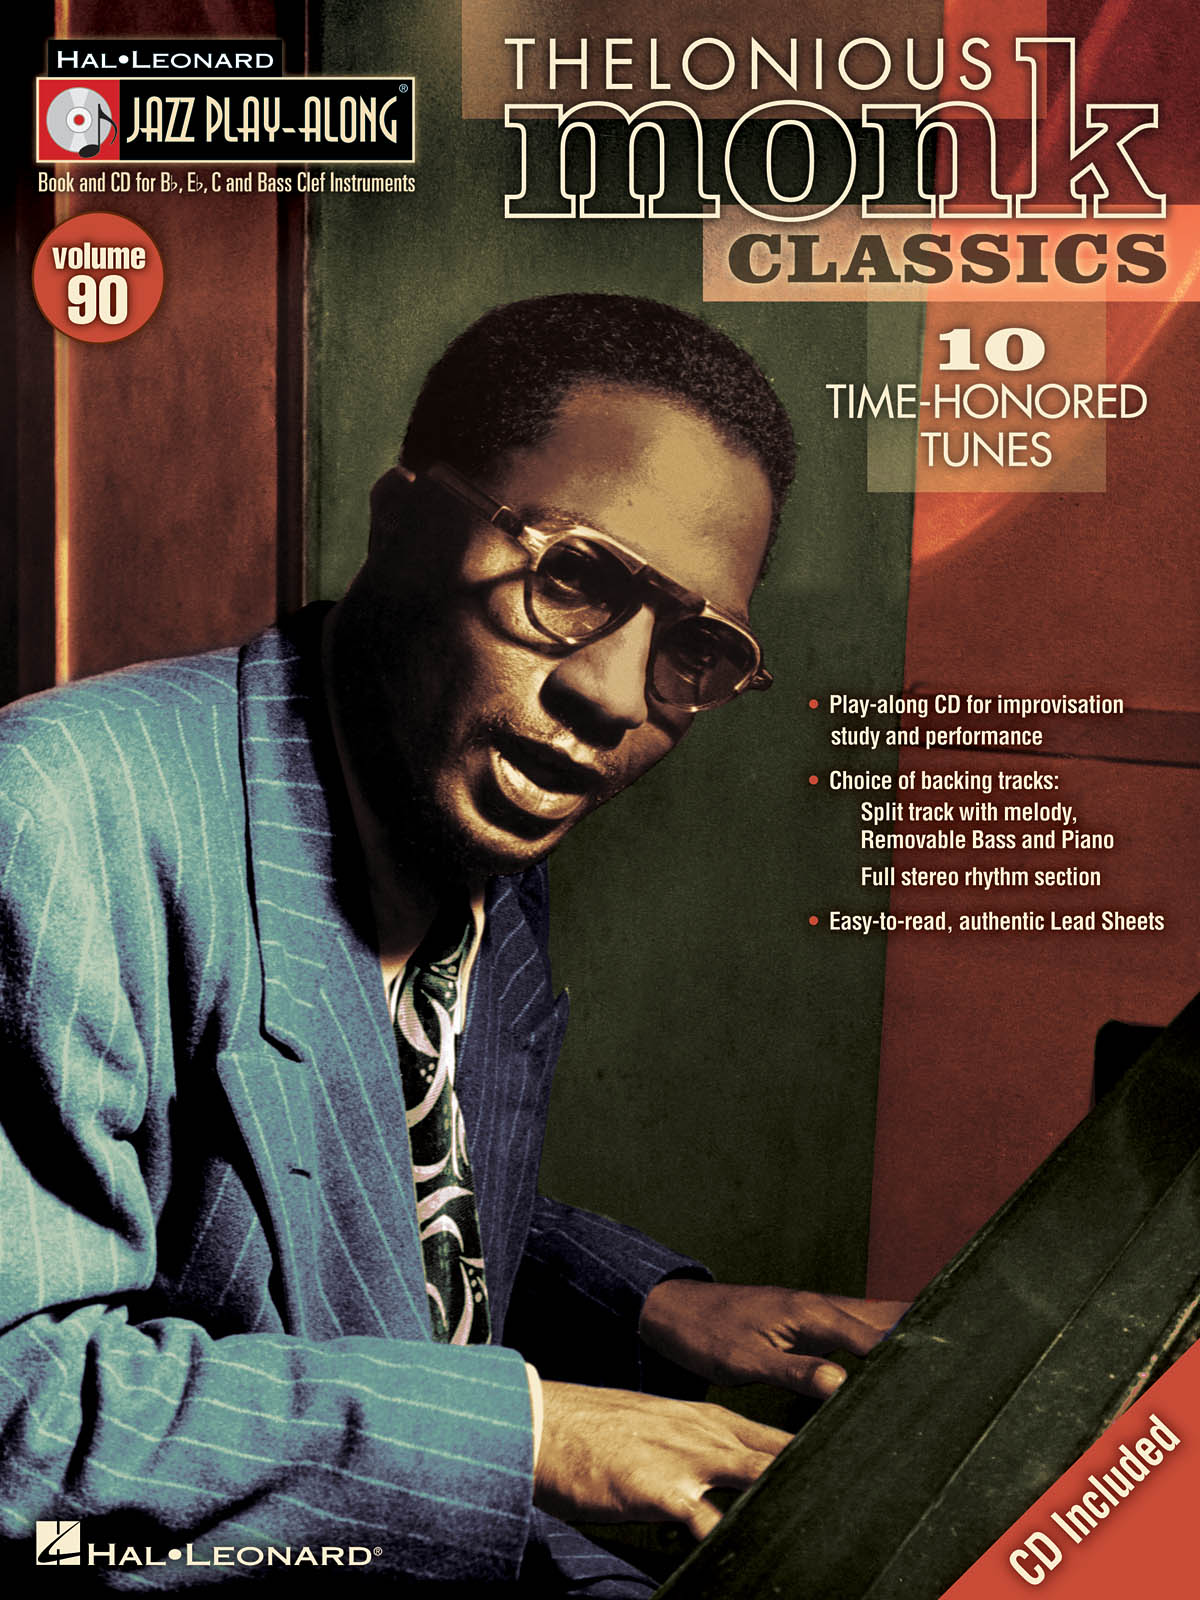 Thelonious Monk Classics - Jazz Play-Along Volume 90 - noty pro nástroje v ladění C